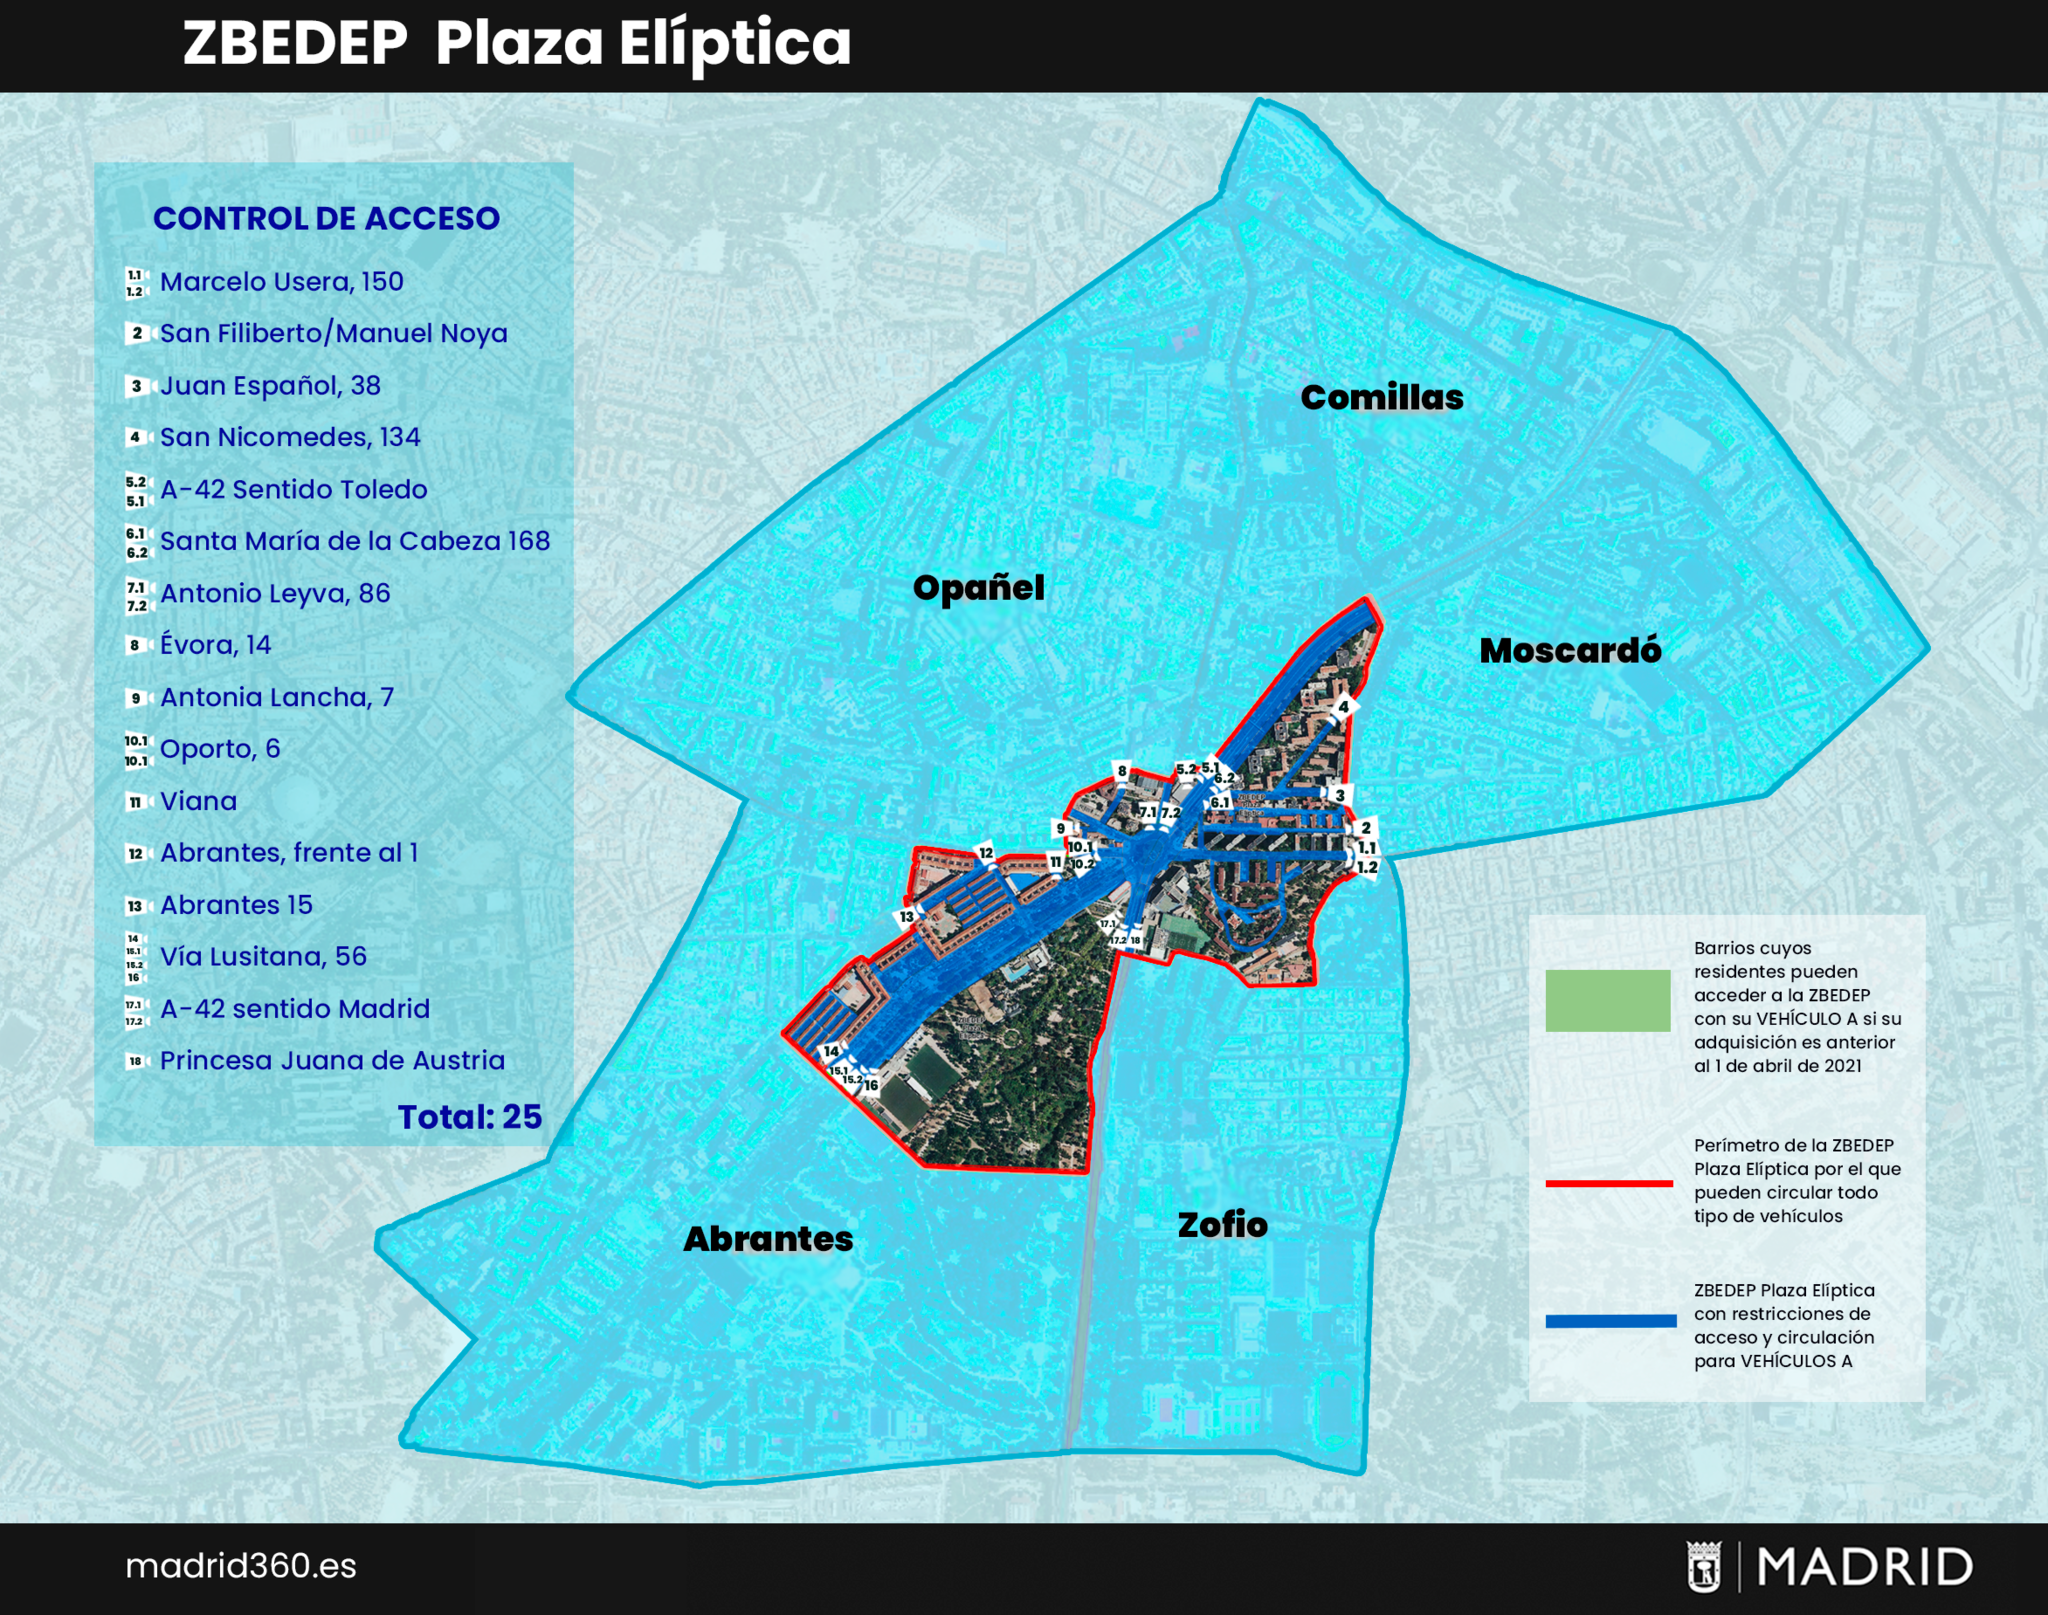 ZBEDEP - Plaza Eliptica - restricciones - Madrid Central - multas - entrada en vigor